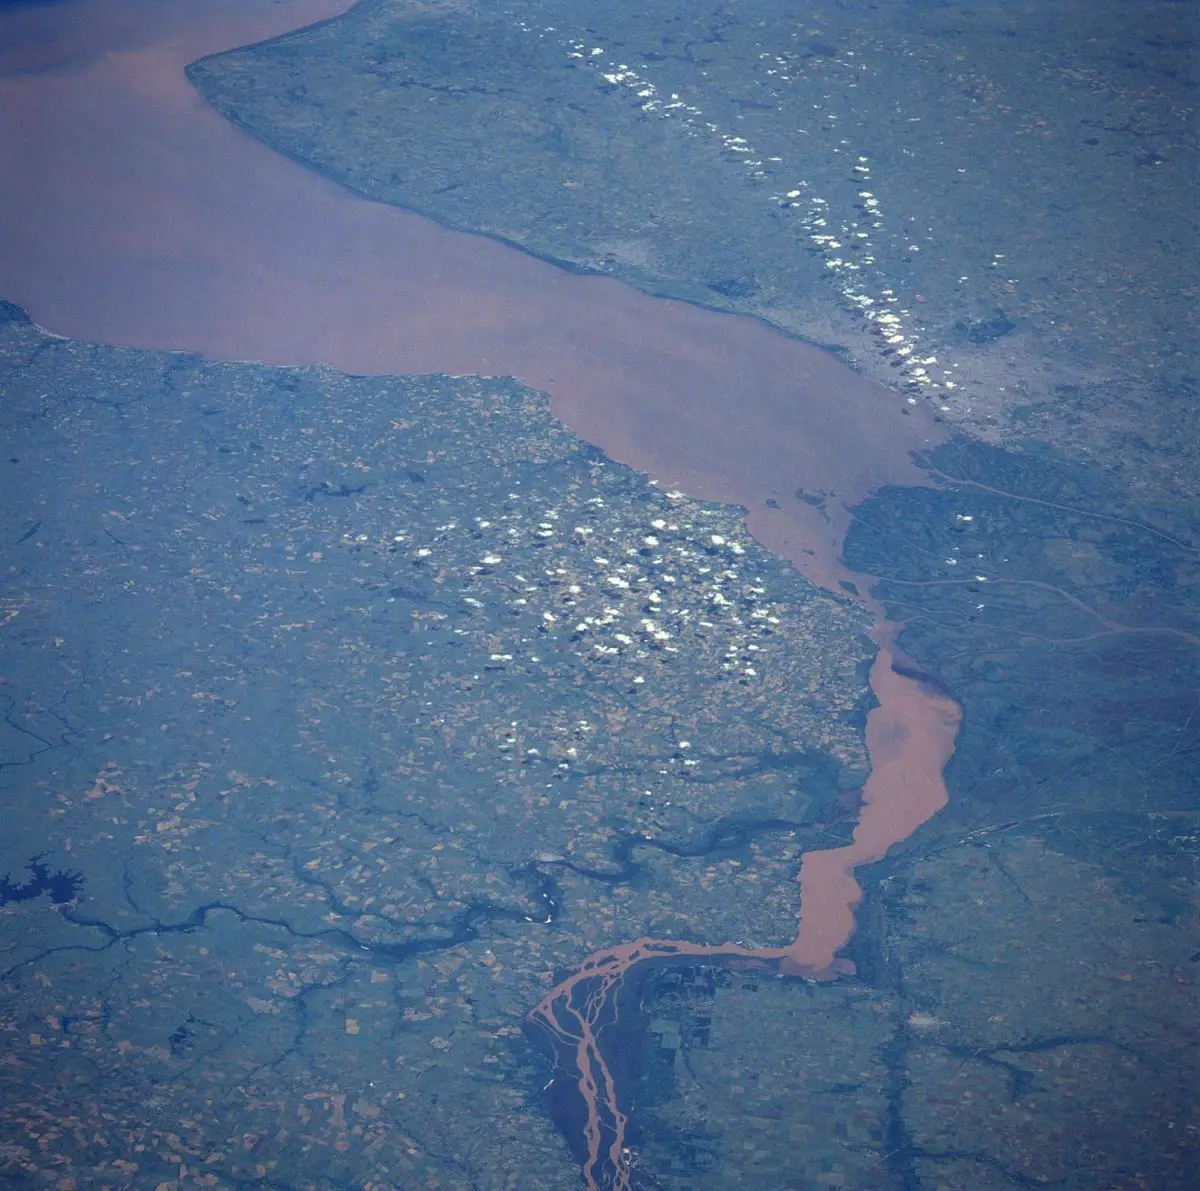 vista aerea del rio de la plata